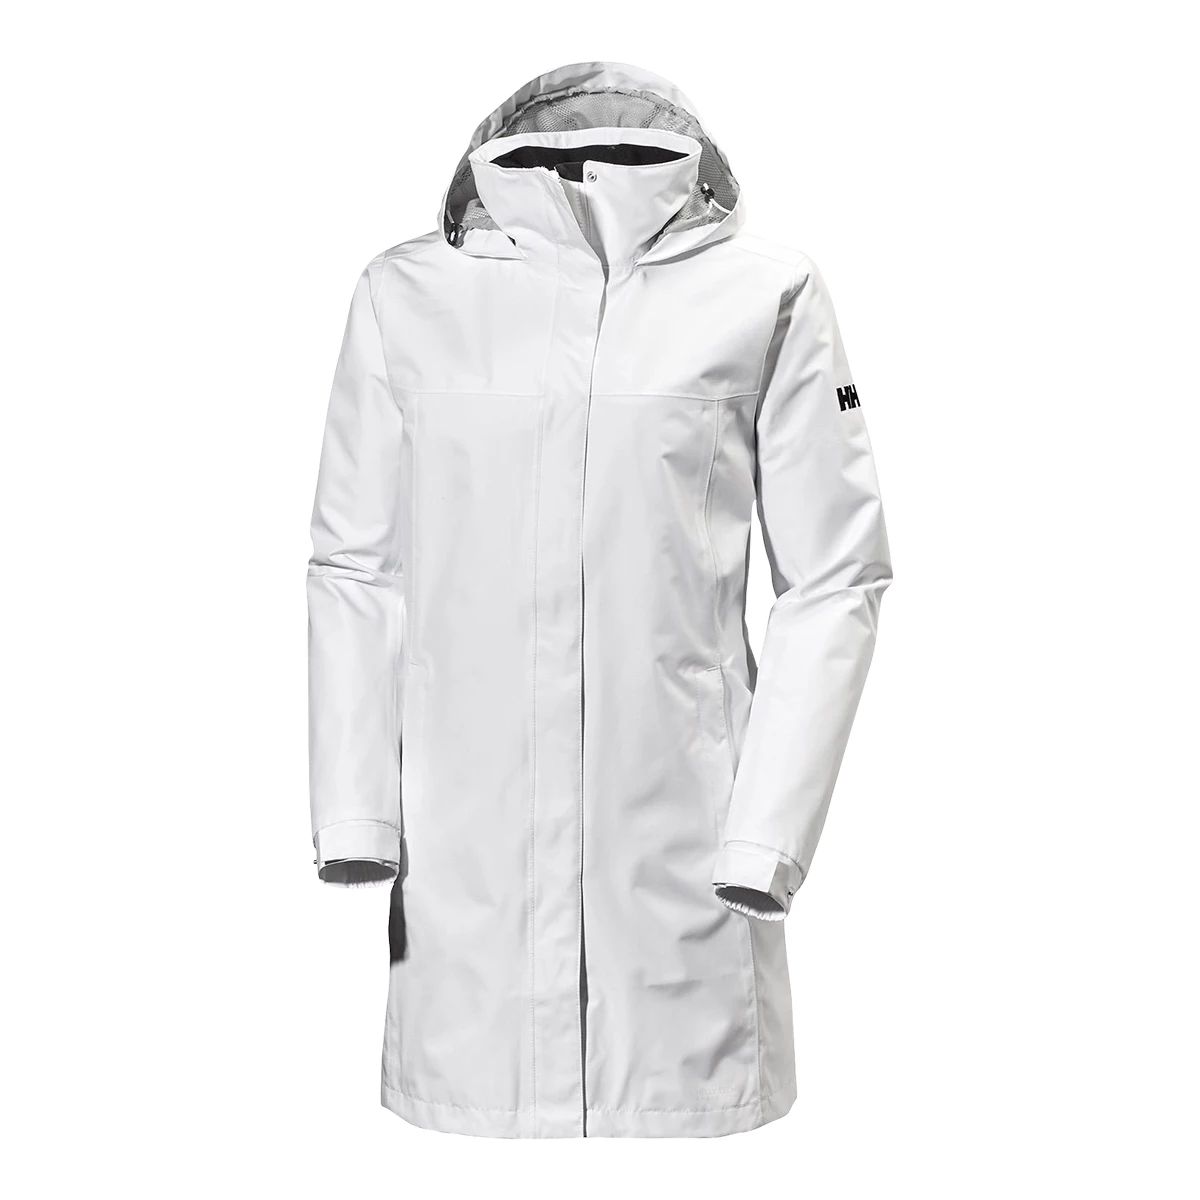 Helly Hansen Women's Aden Hooded Rain Jacket  Waterproof Breathable Long Windbreaker